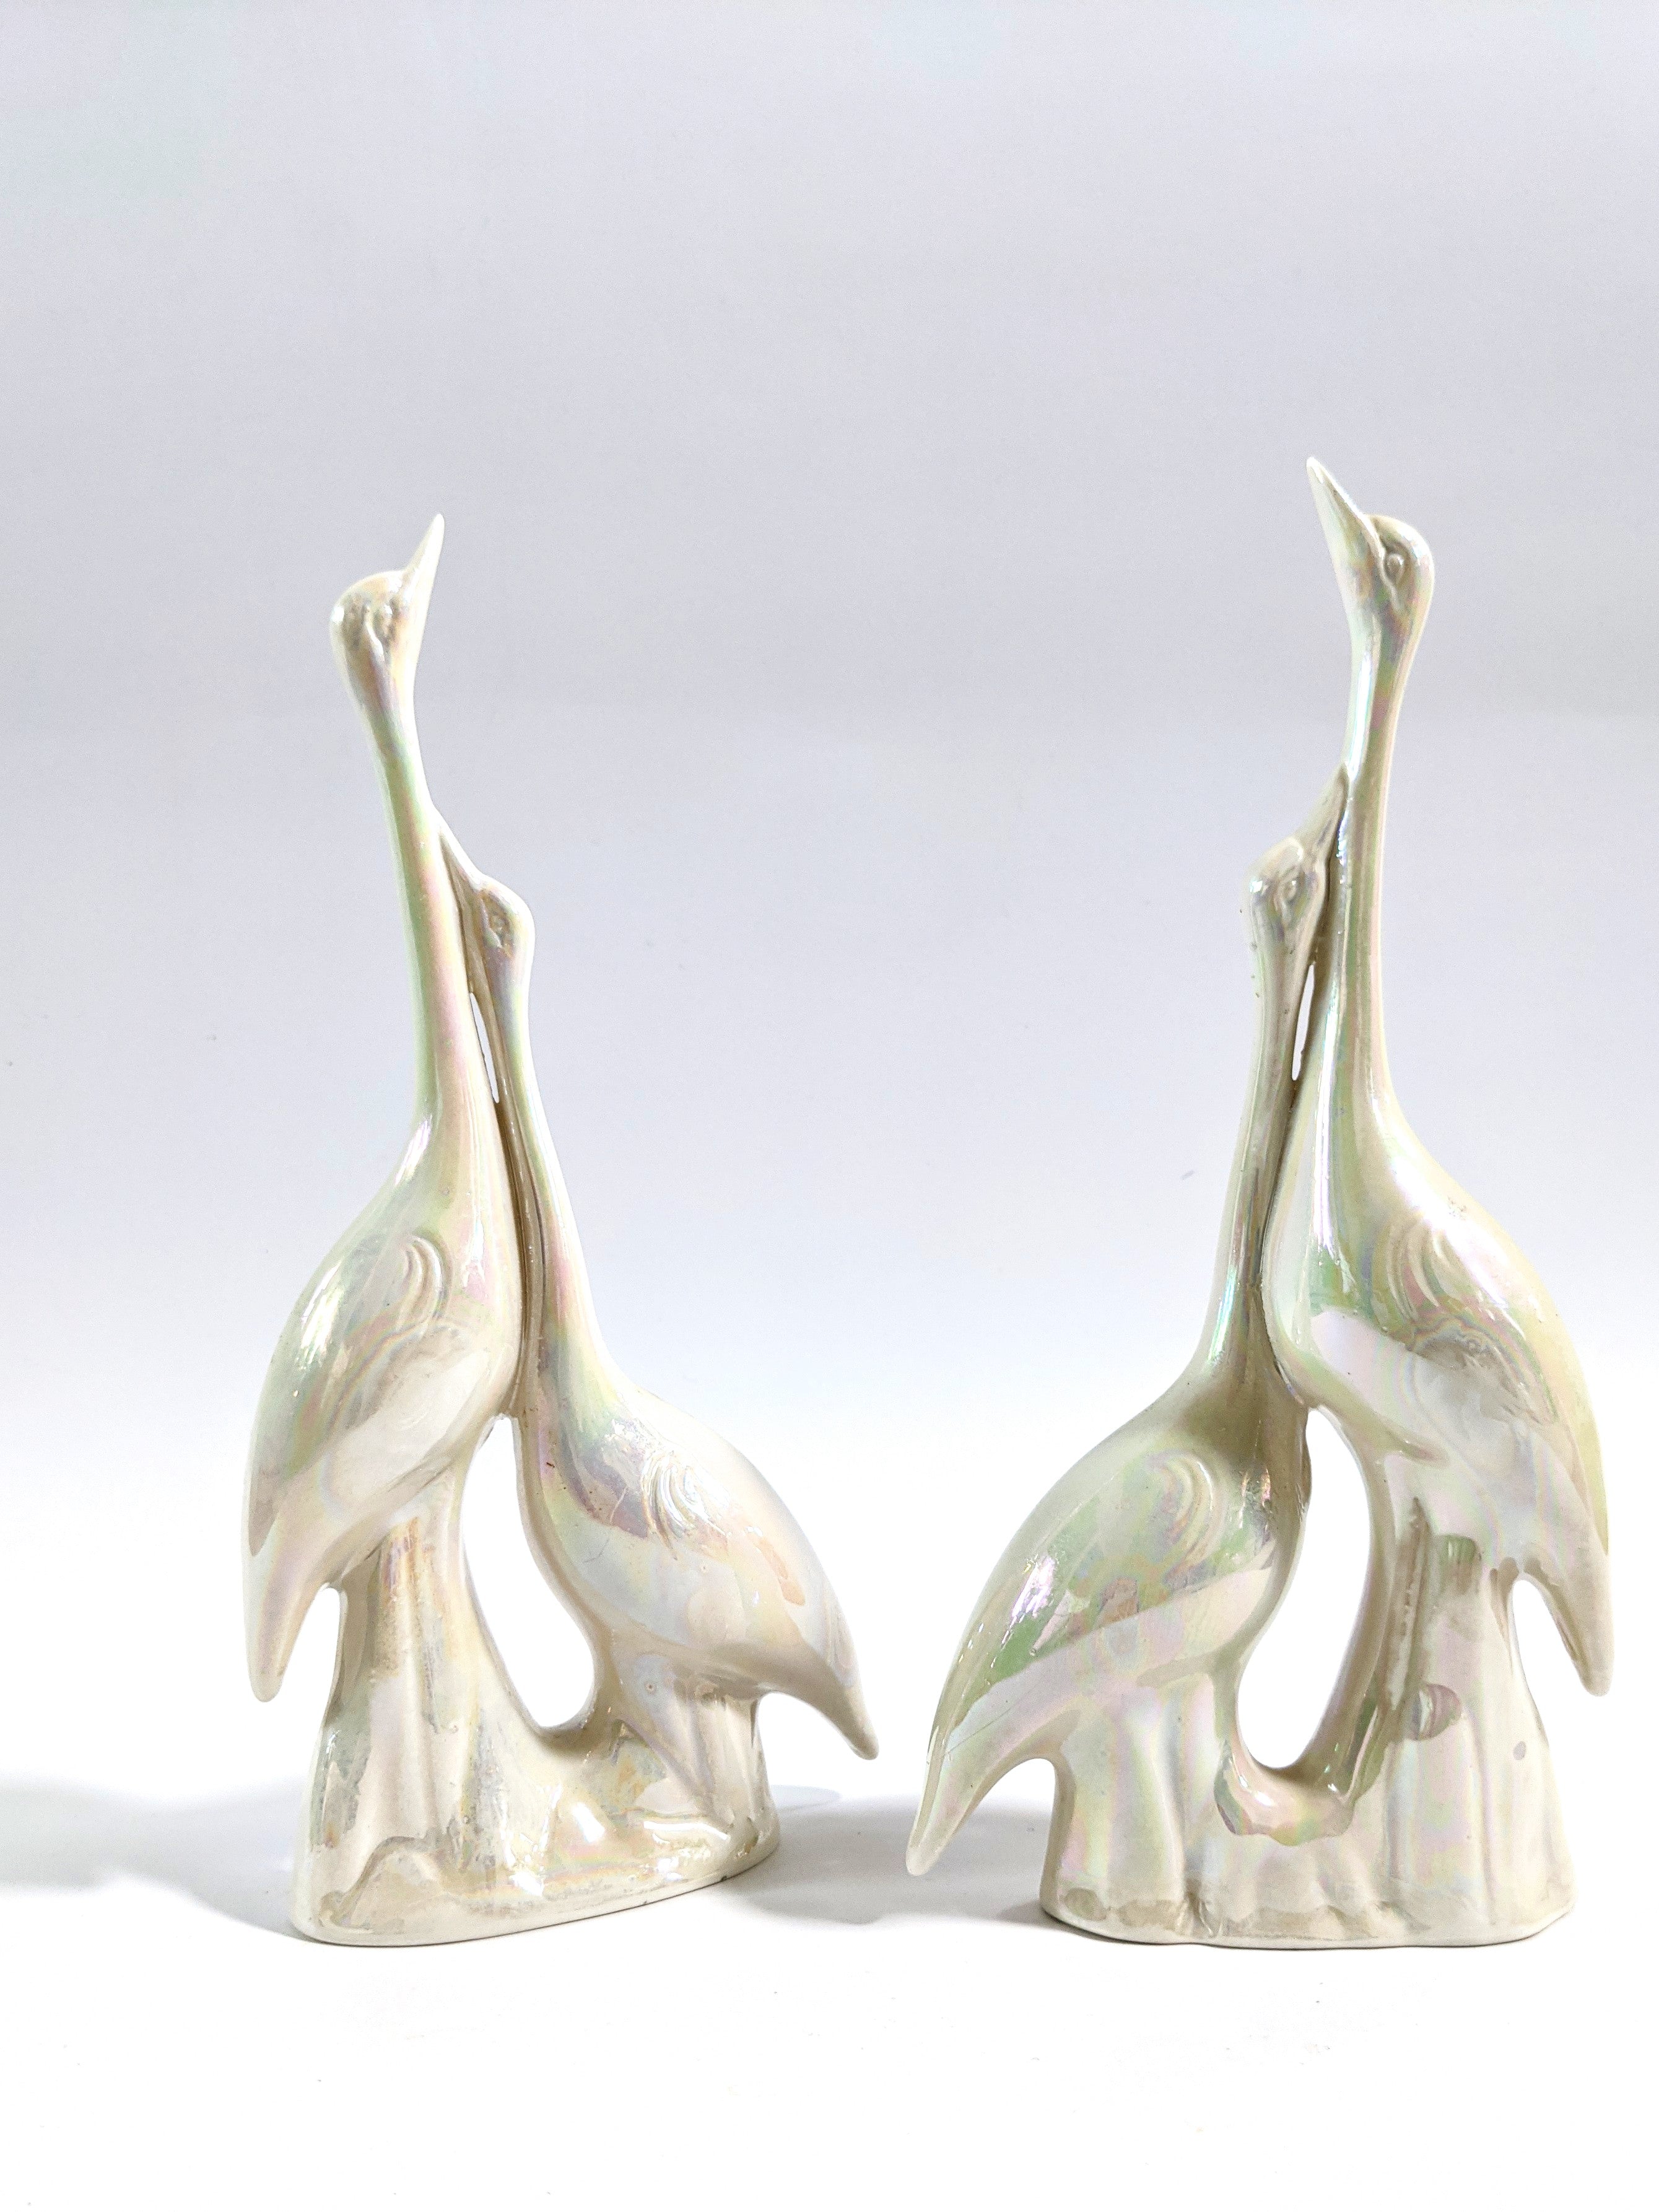 Iridescent Ceramic Cranes